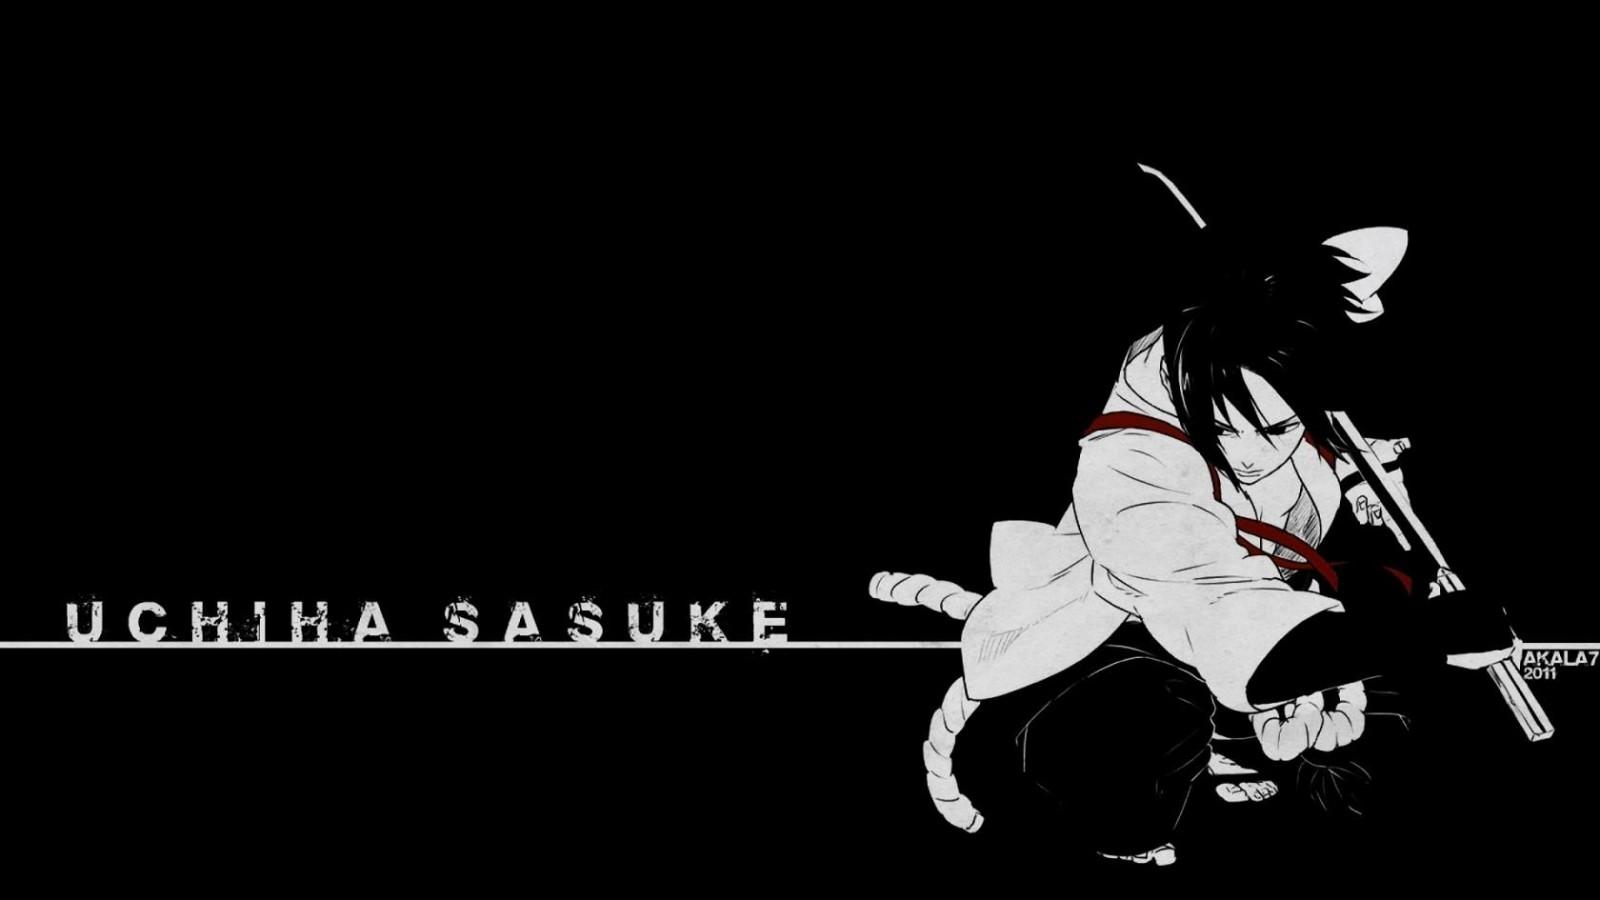 Black Sasuke 4k Desktop Wallpapers - Wallpaper Cave